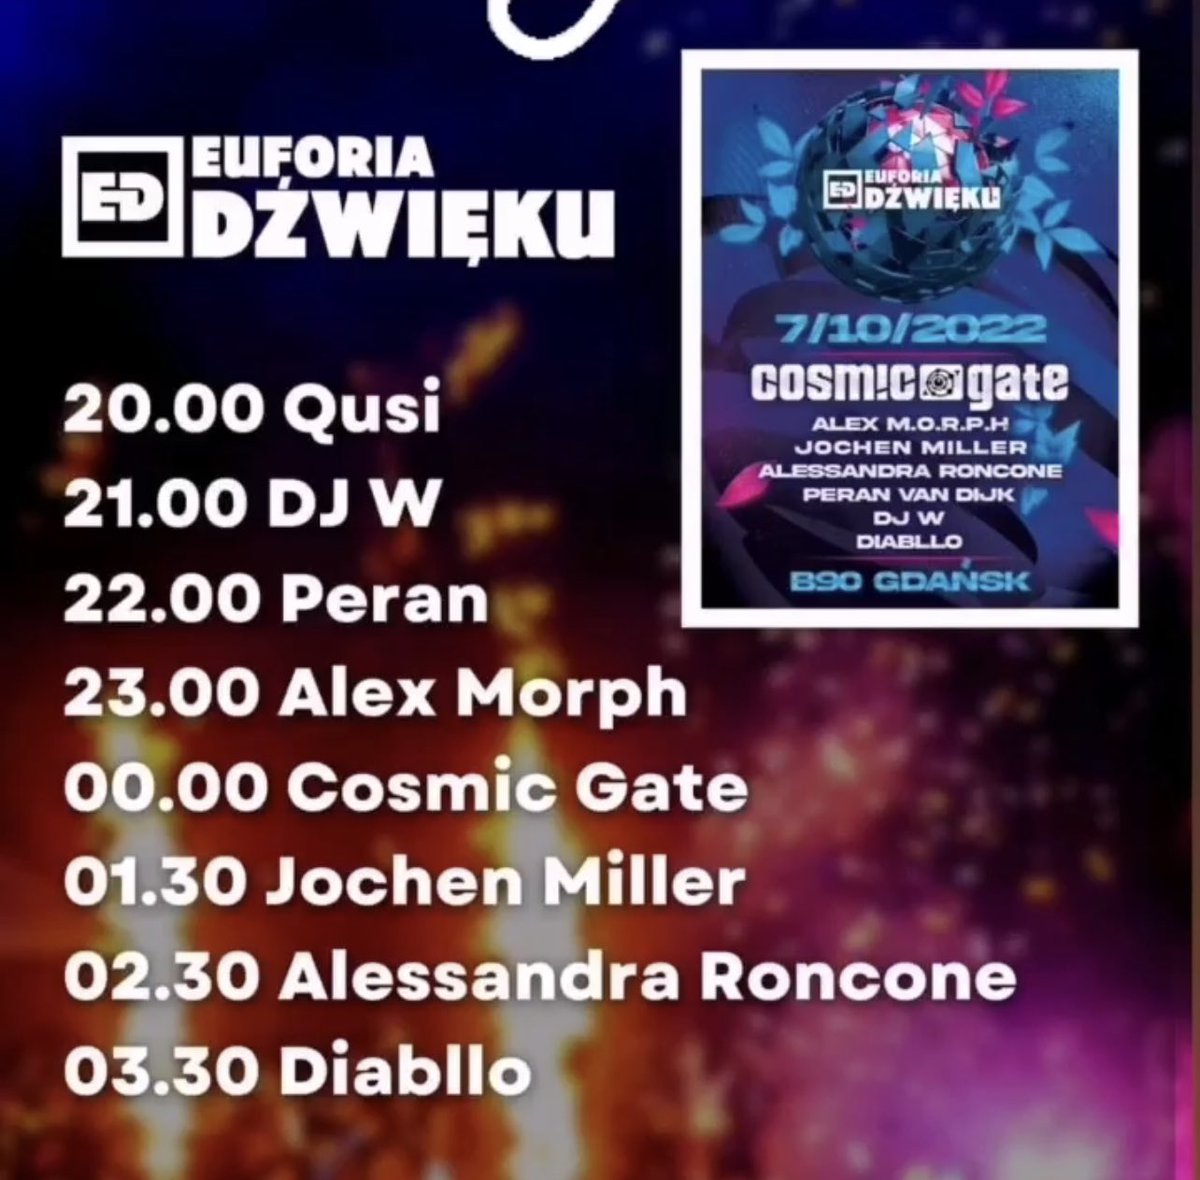 TONIGHT #Gdansk 🙌🏼🙌🏼 See you Klub B90 - our set time 00:00-1:30 🇵🇱 tickets euforiadzwieku.pl/bilety/